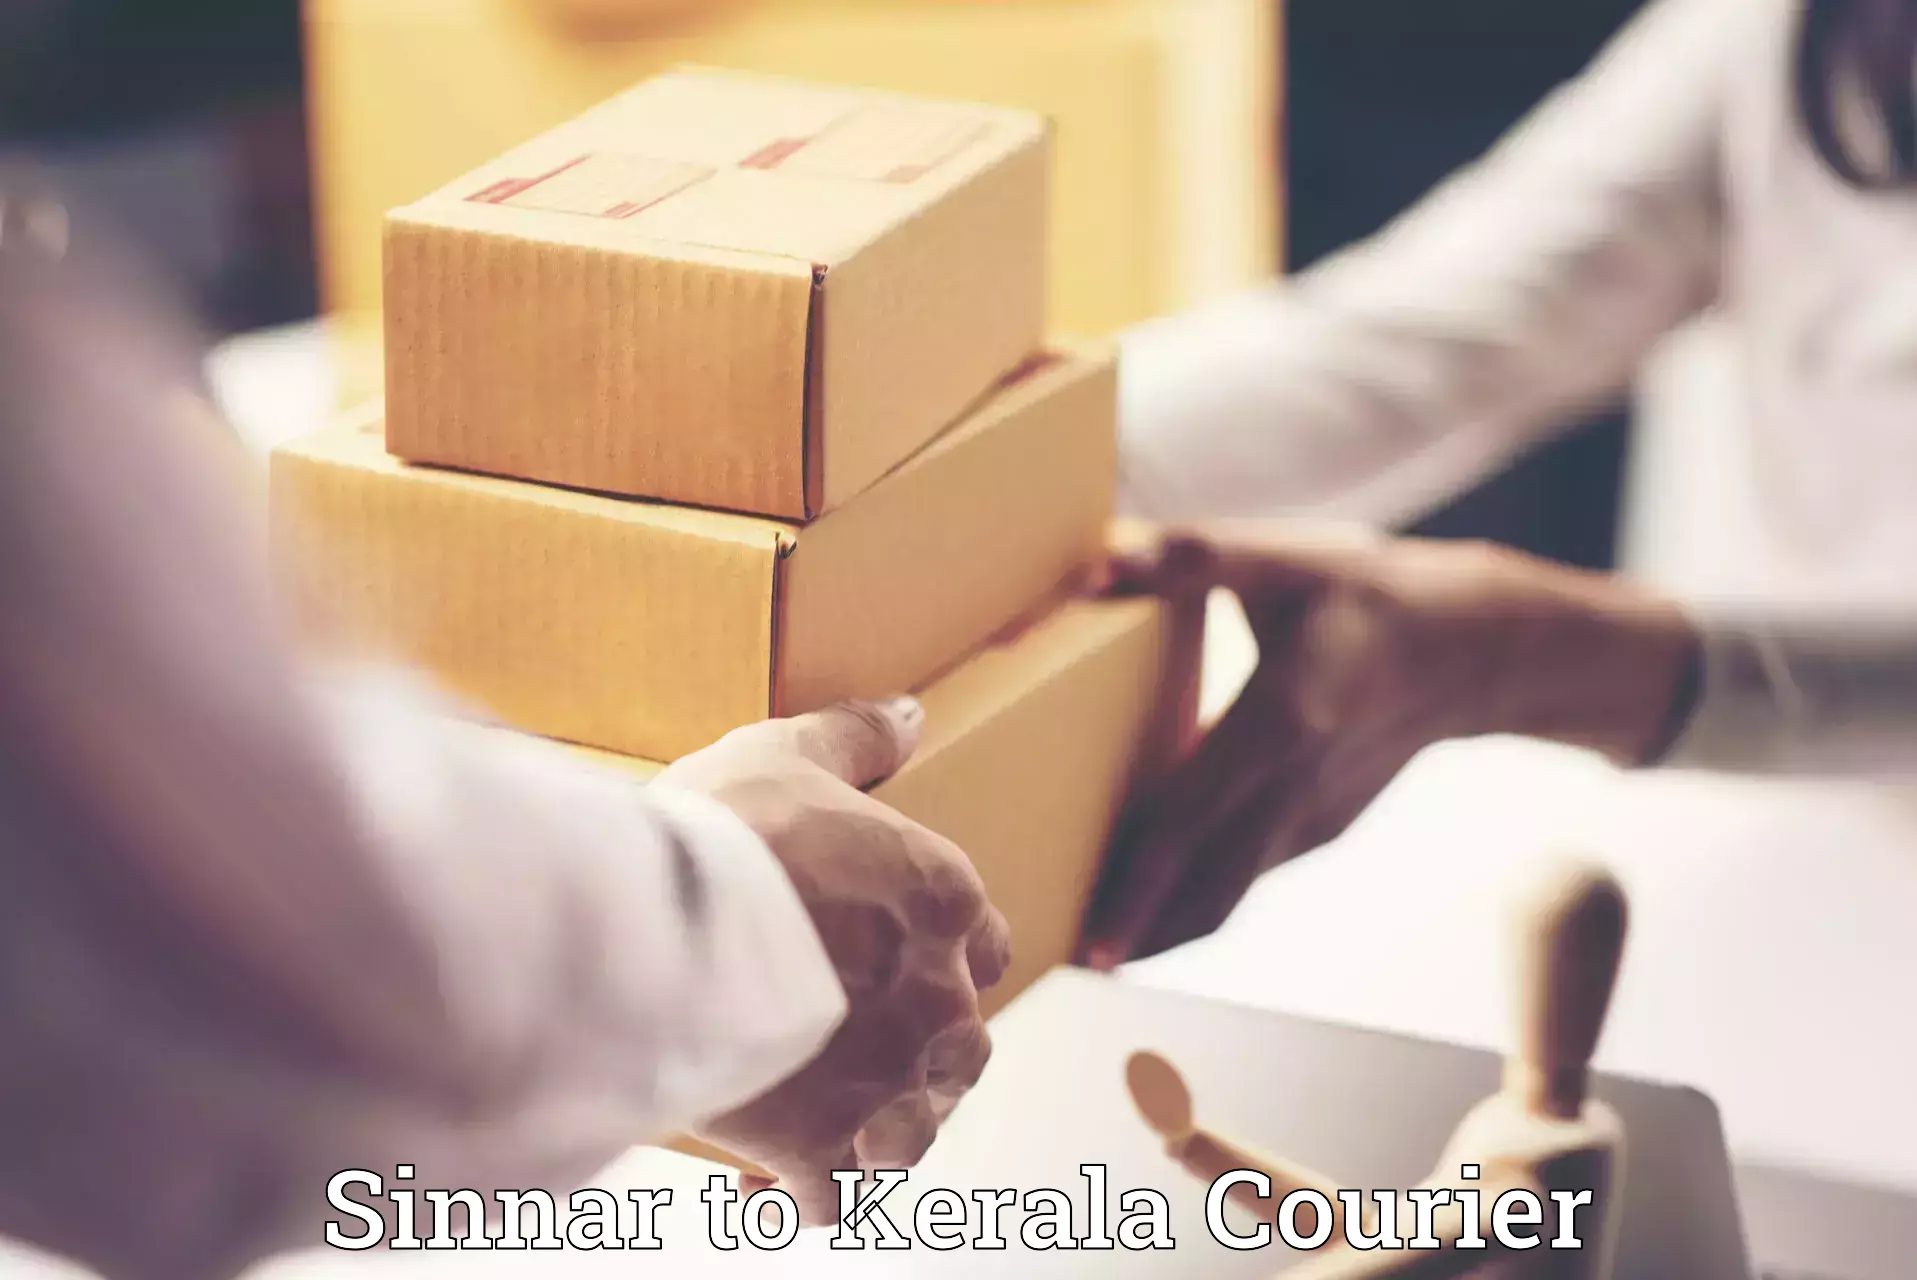 Baggage shipping experts Sinnar to Kerala